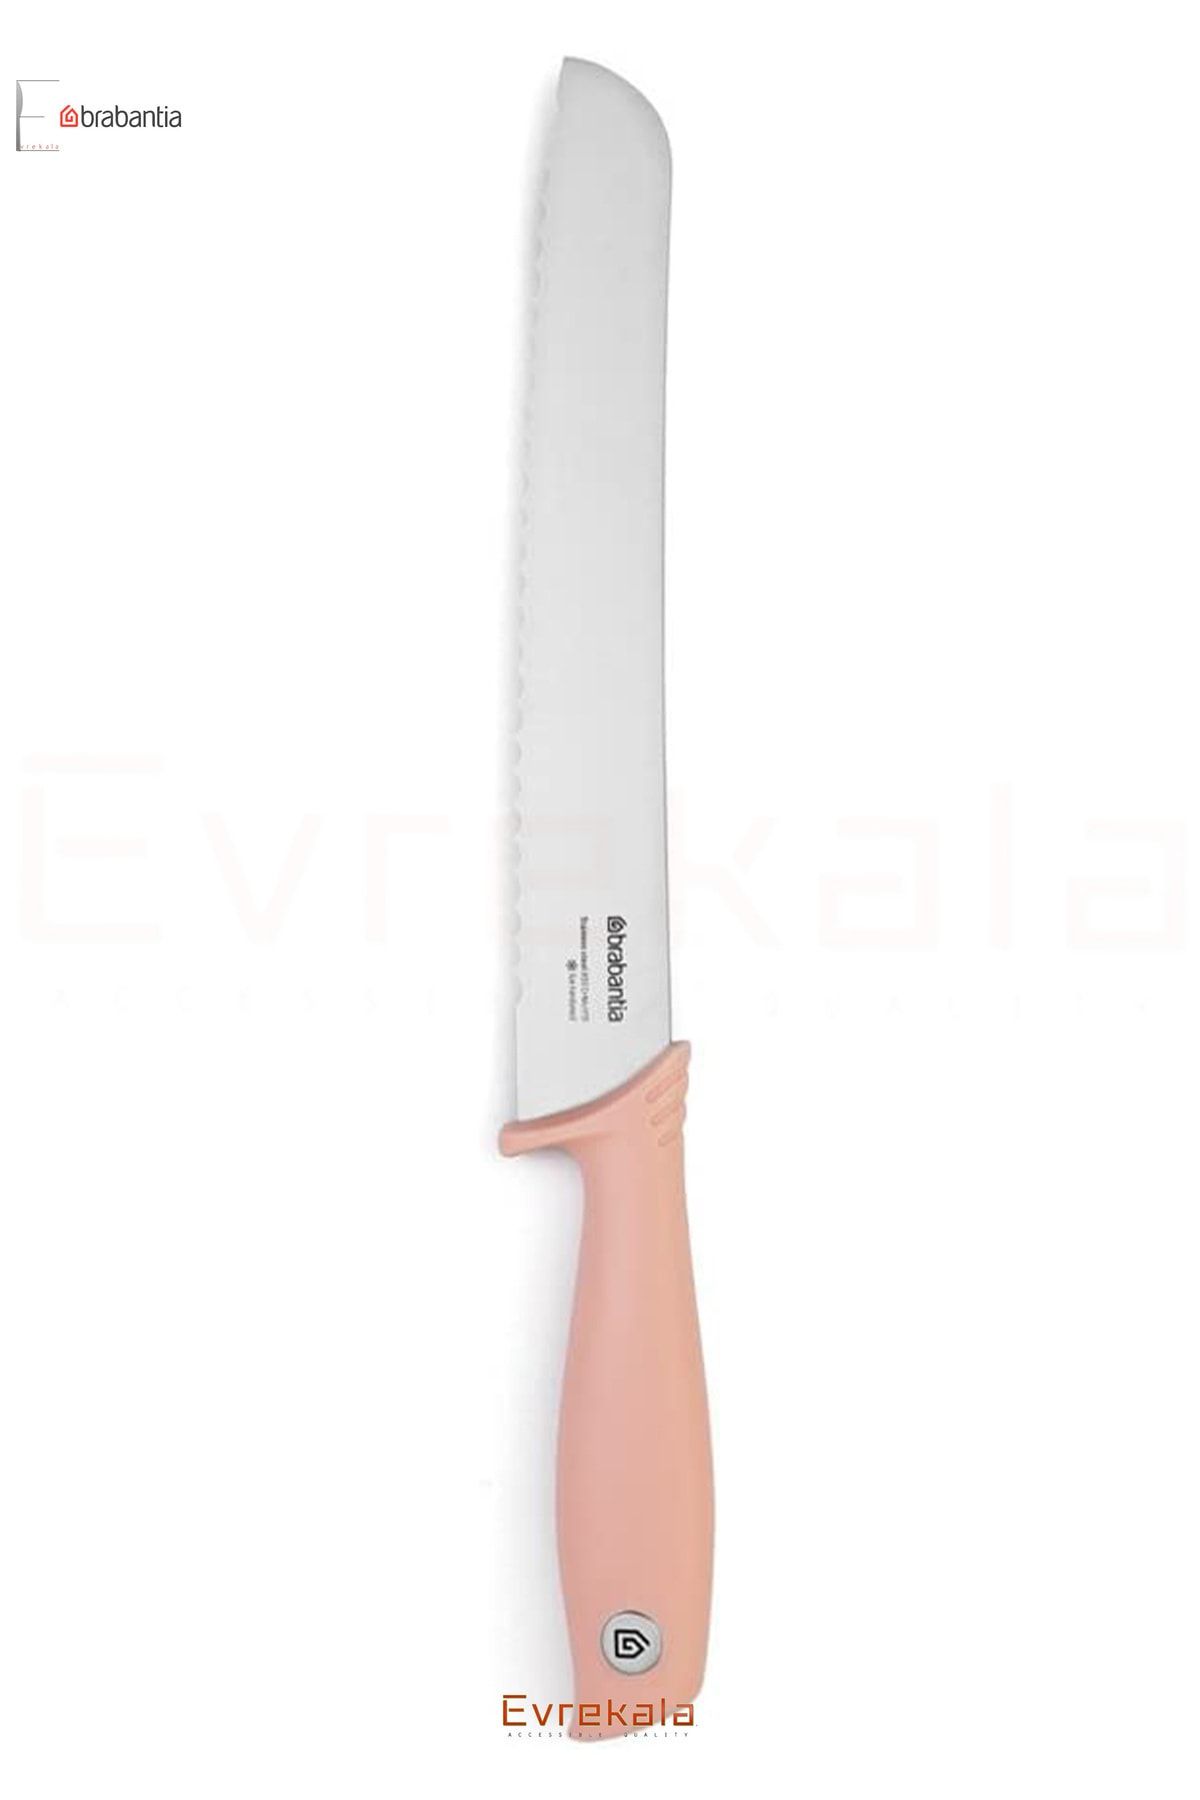 Brabantıa Evrekala Shop Ekmek Bıçağı 20 cm Brabantia Pink Bread Knife